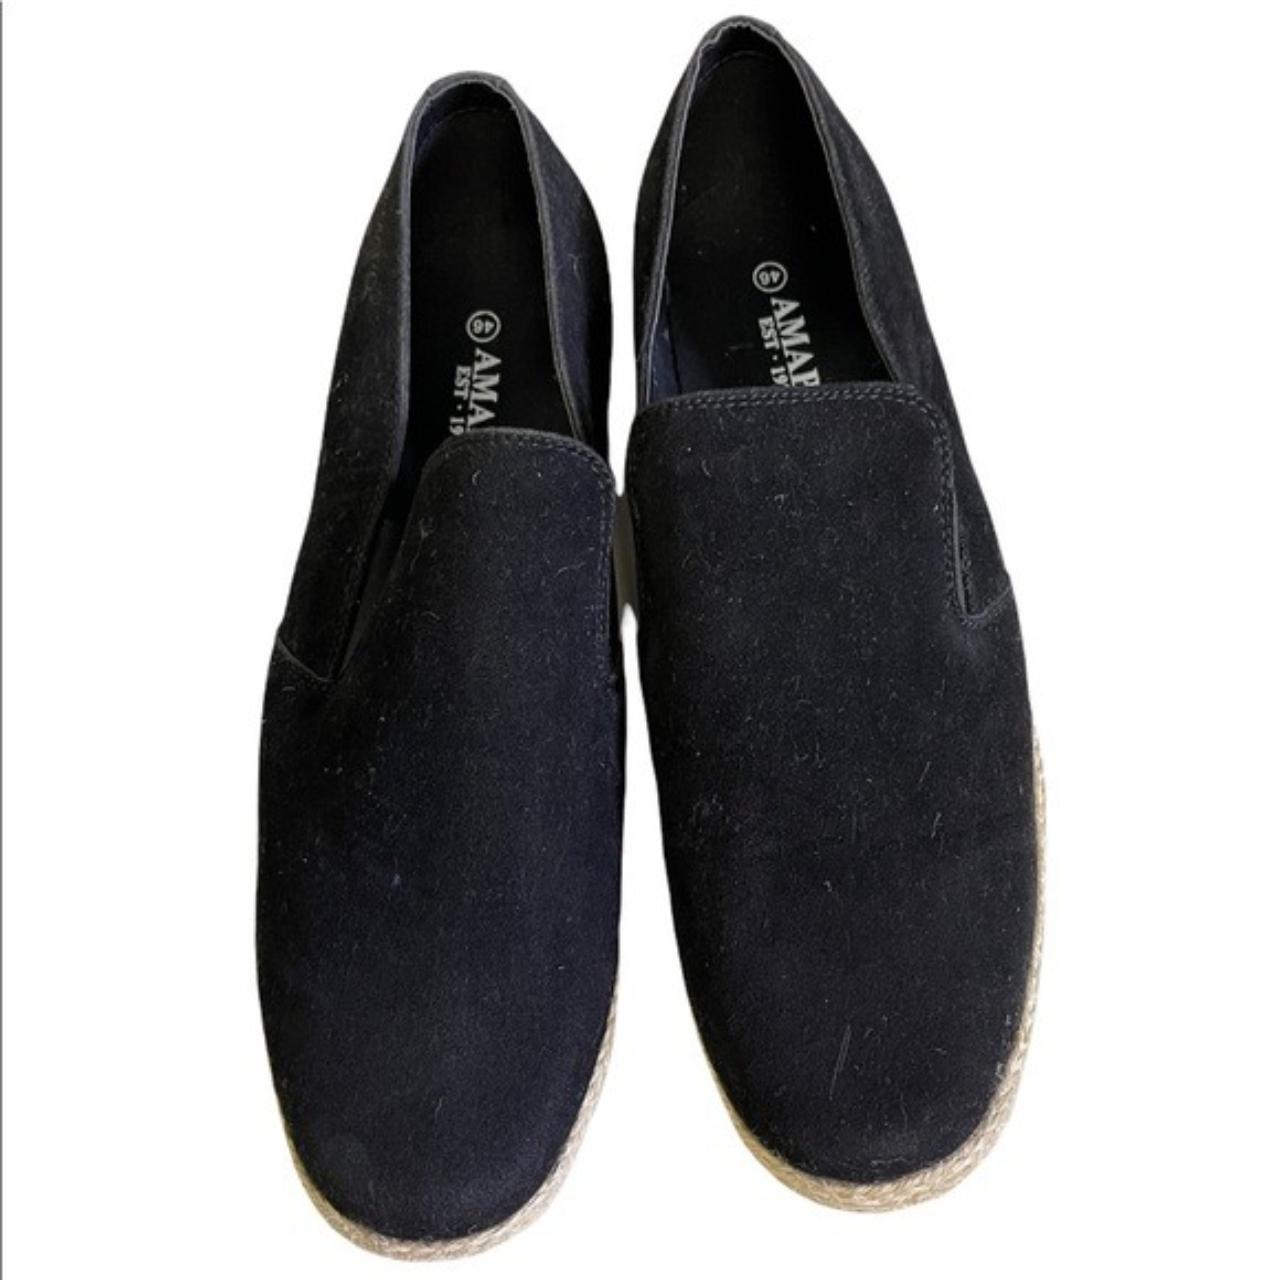 Product Image 2 - Amapo Men’s Shoes
Color : black
Size